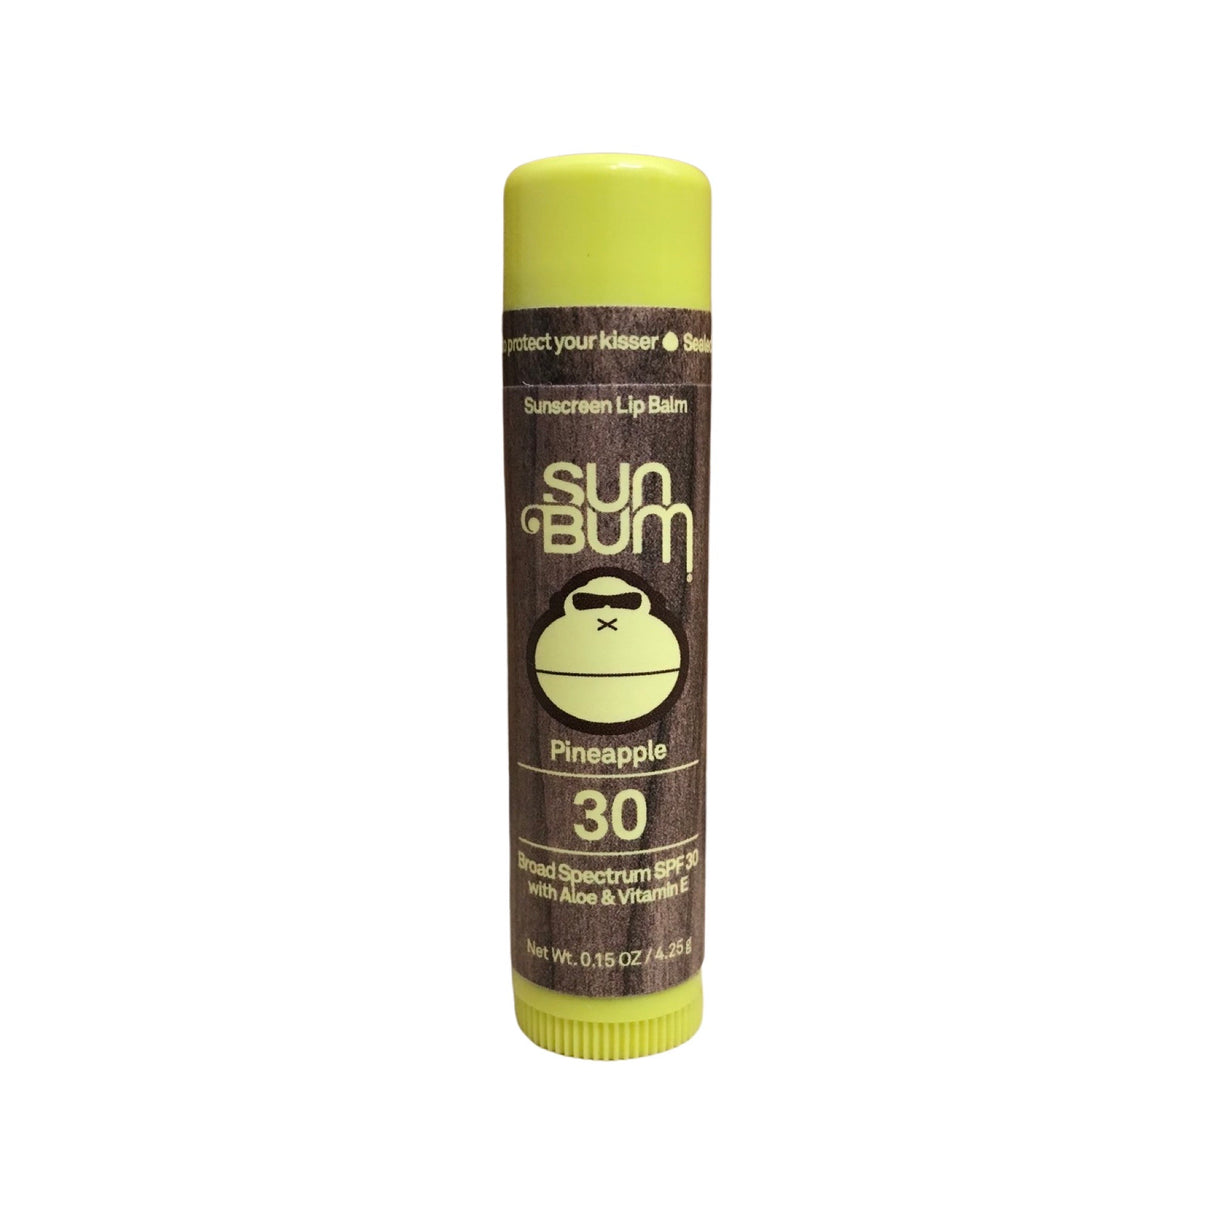 Sun Bum Pineapple Lip Balm - Broad Spectrum SPF 30 W/ Aloe & Vitamin E